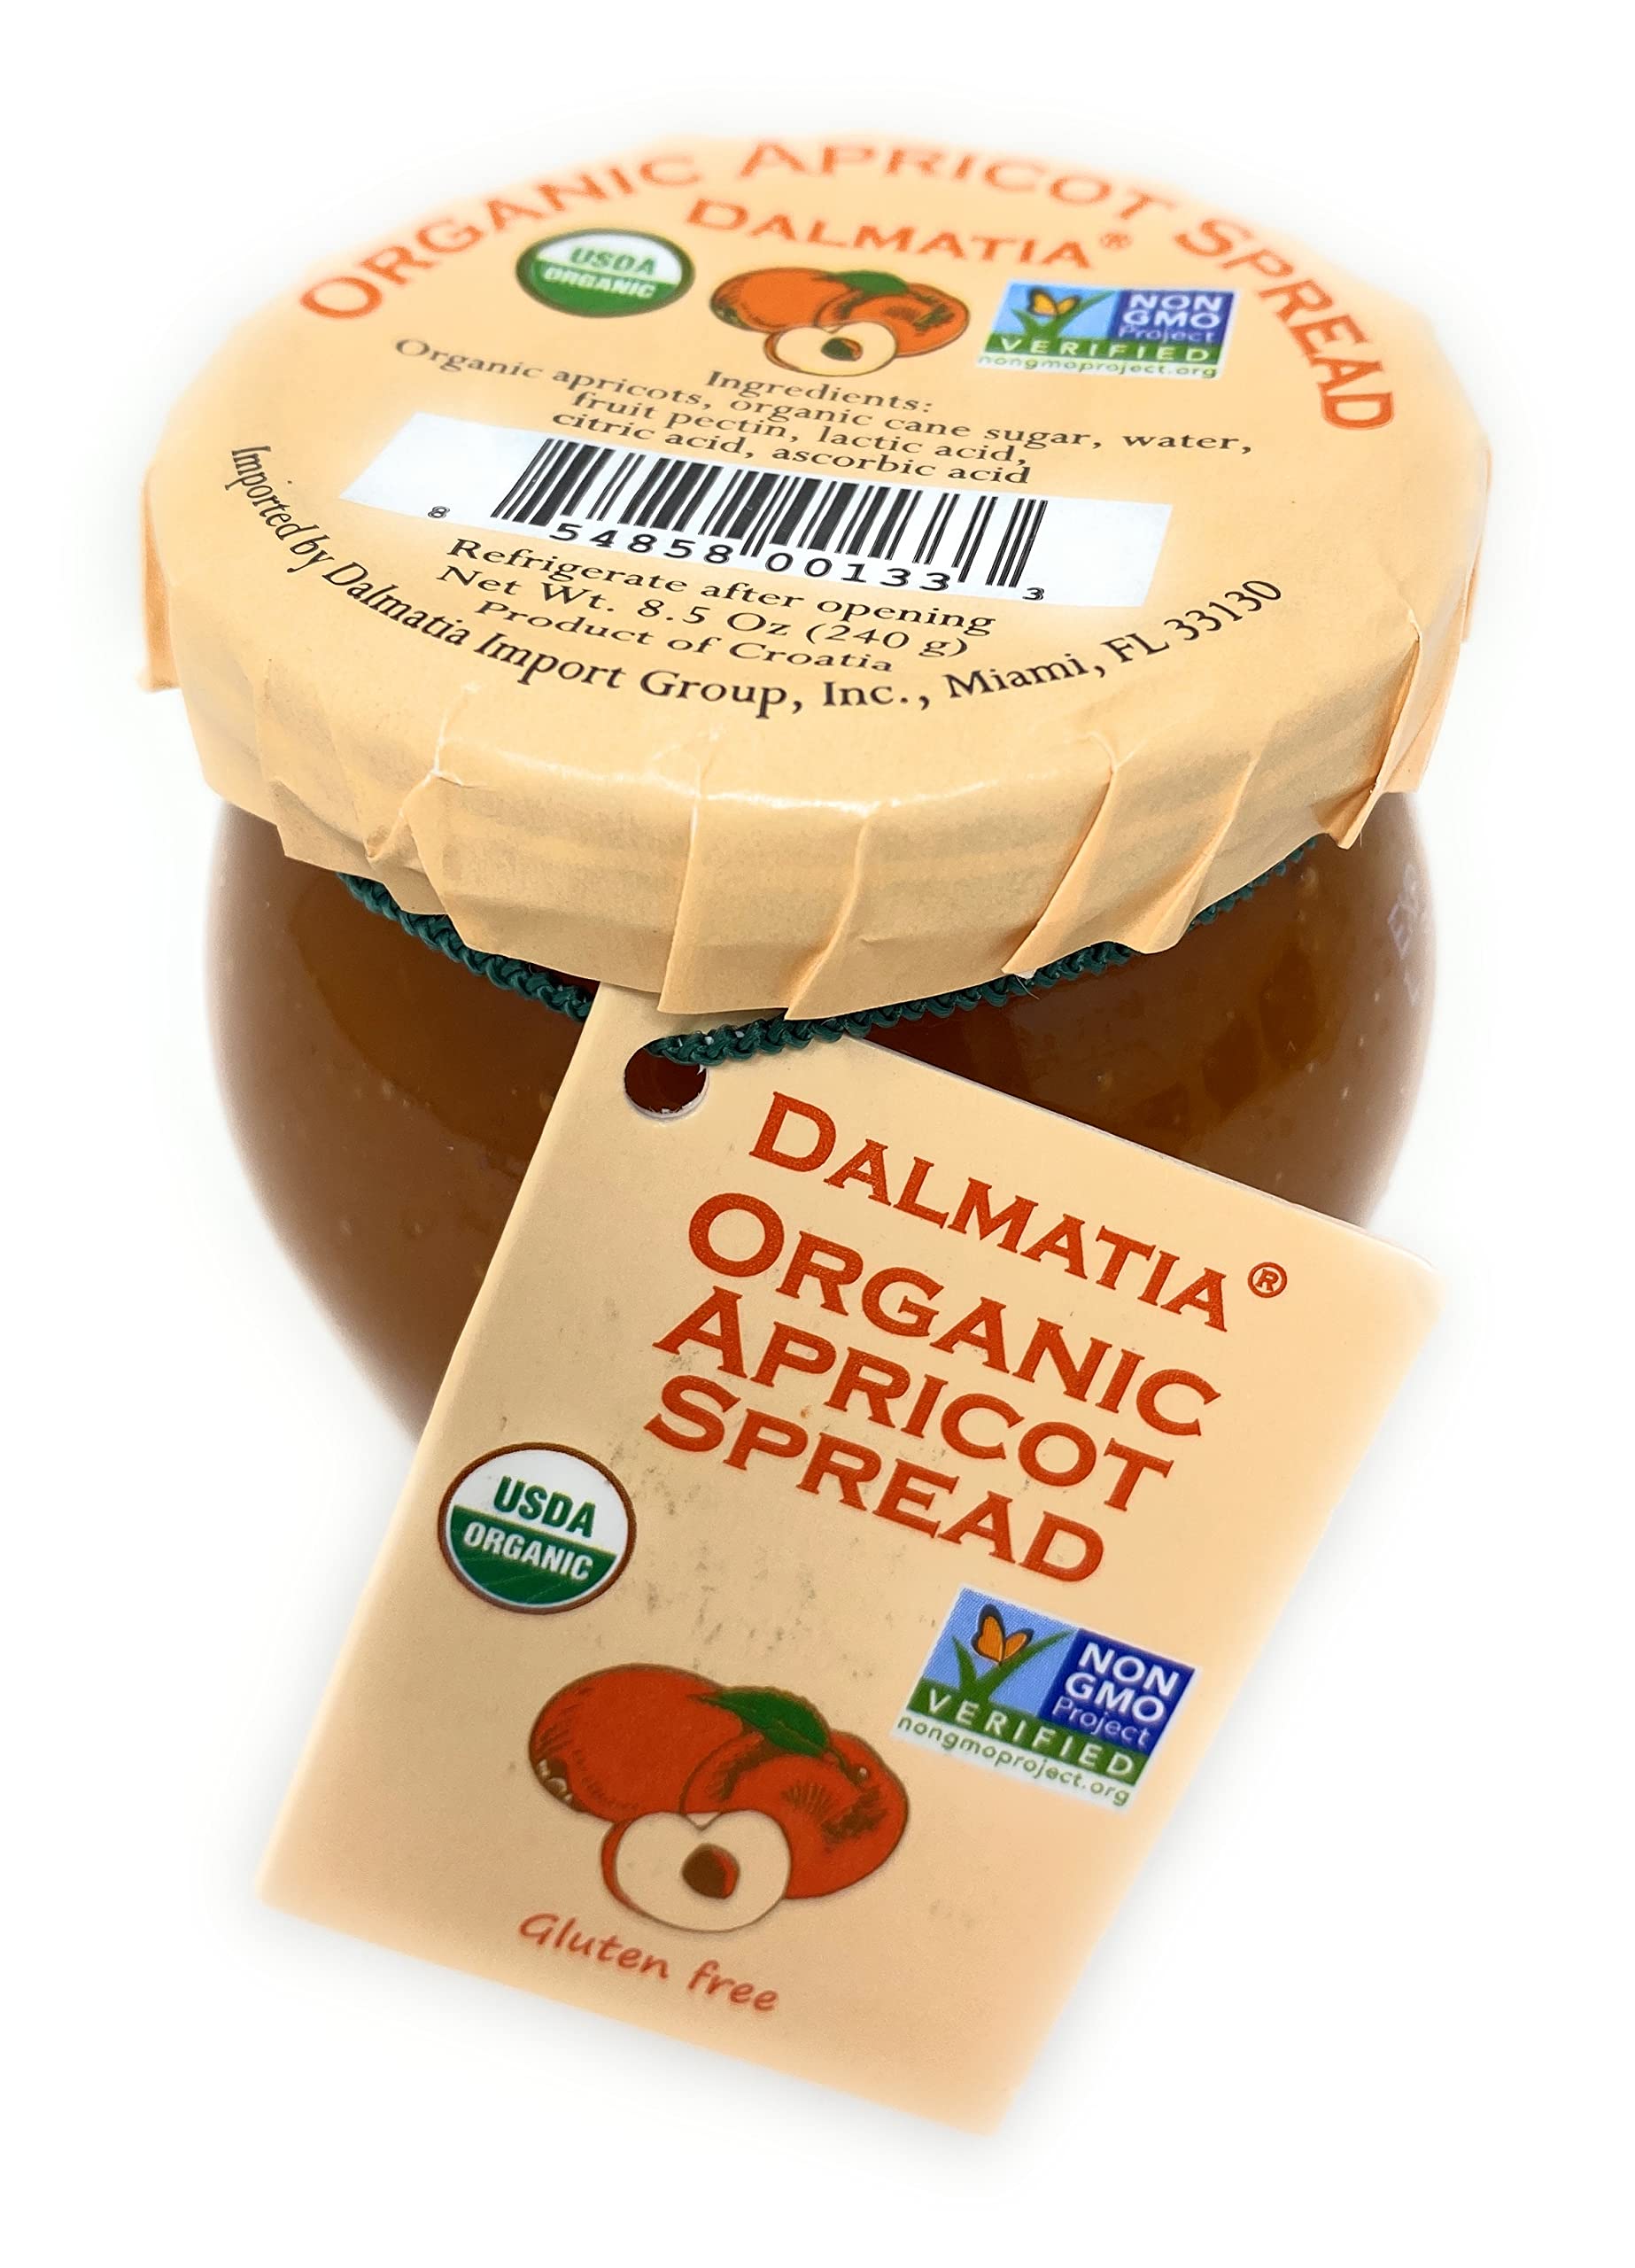 Dalmatia Organic Spread Apricot 8.5oz 12ct